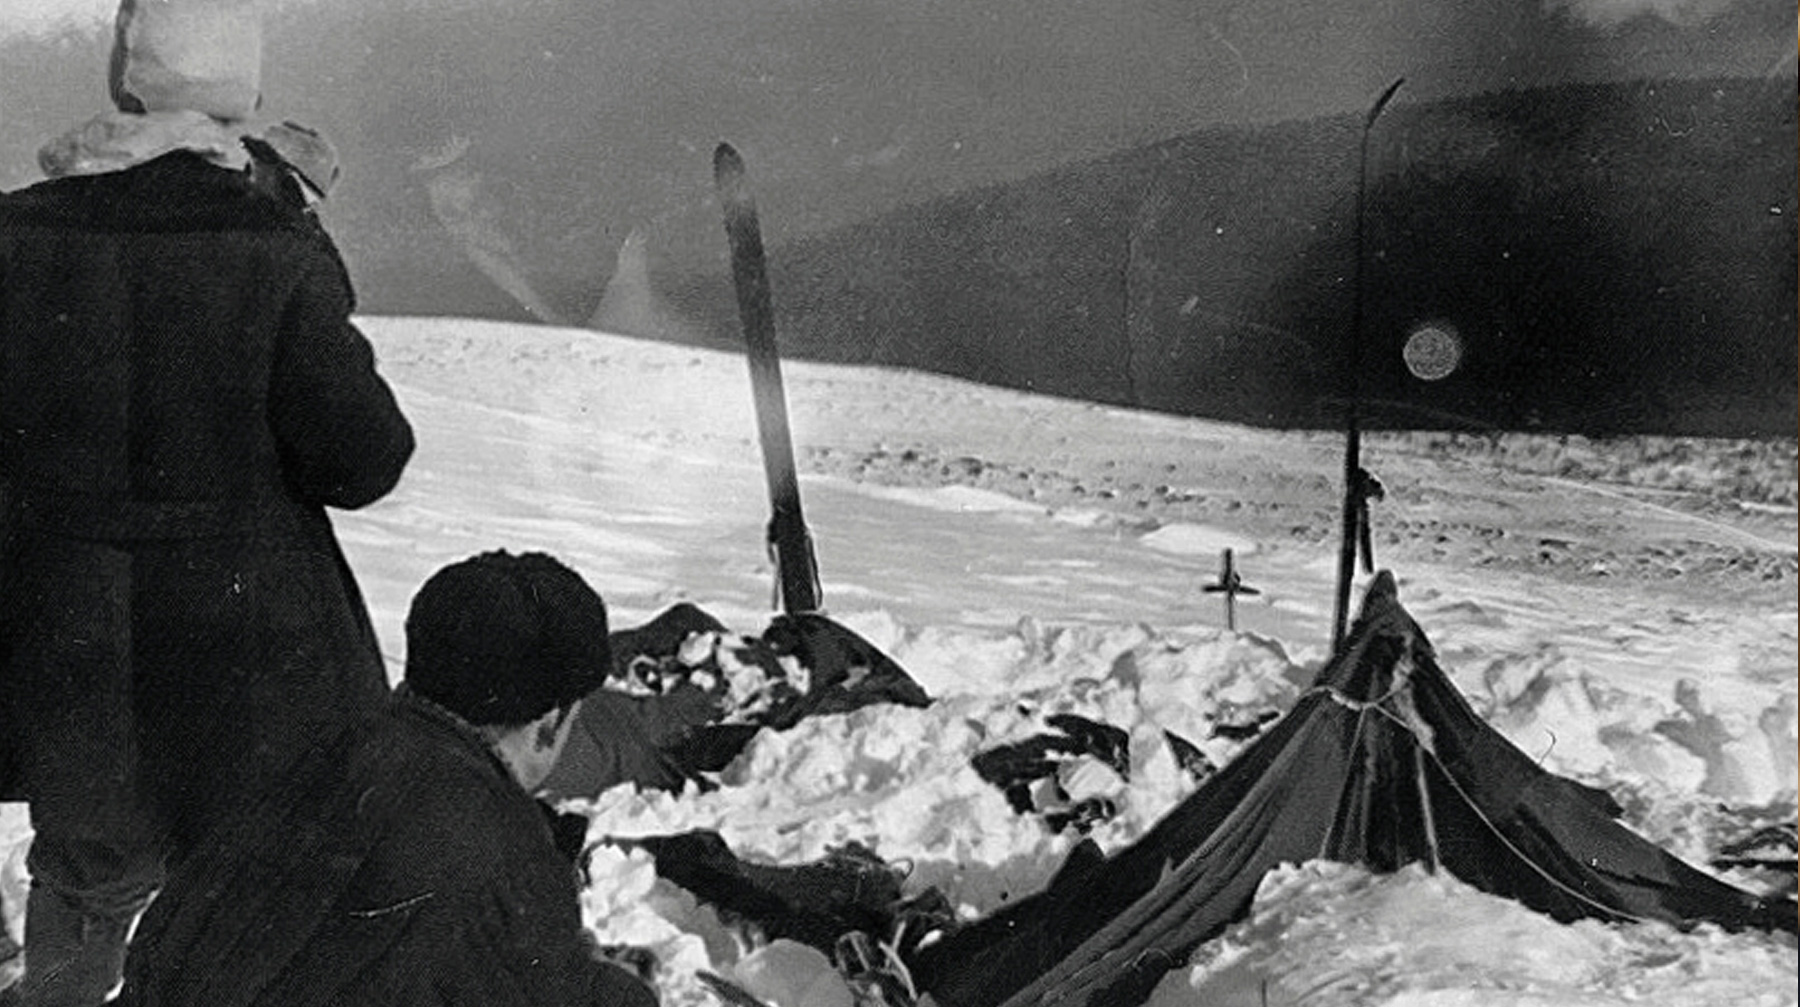 Криминал прокуроры исключили полностью Вид на найденную палатку группы, которую спасатели нашли 26 февраля 1959 г.